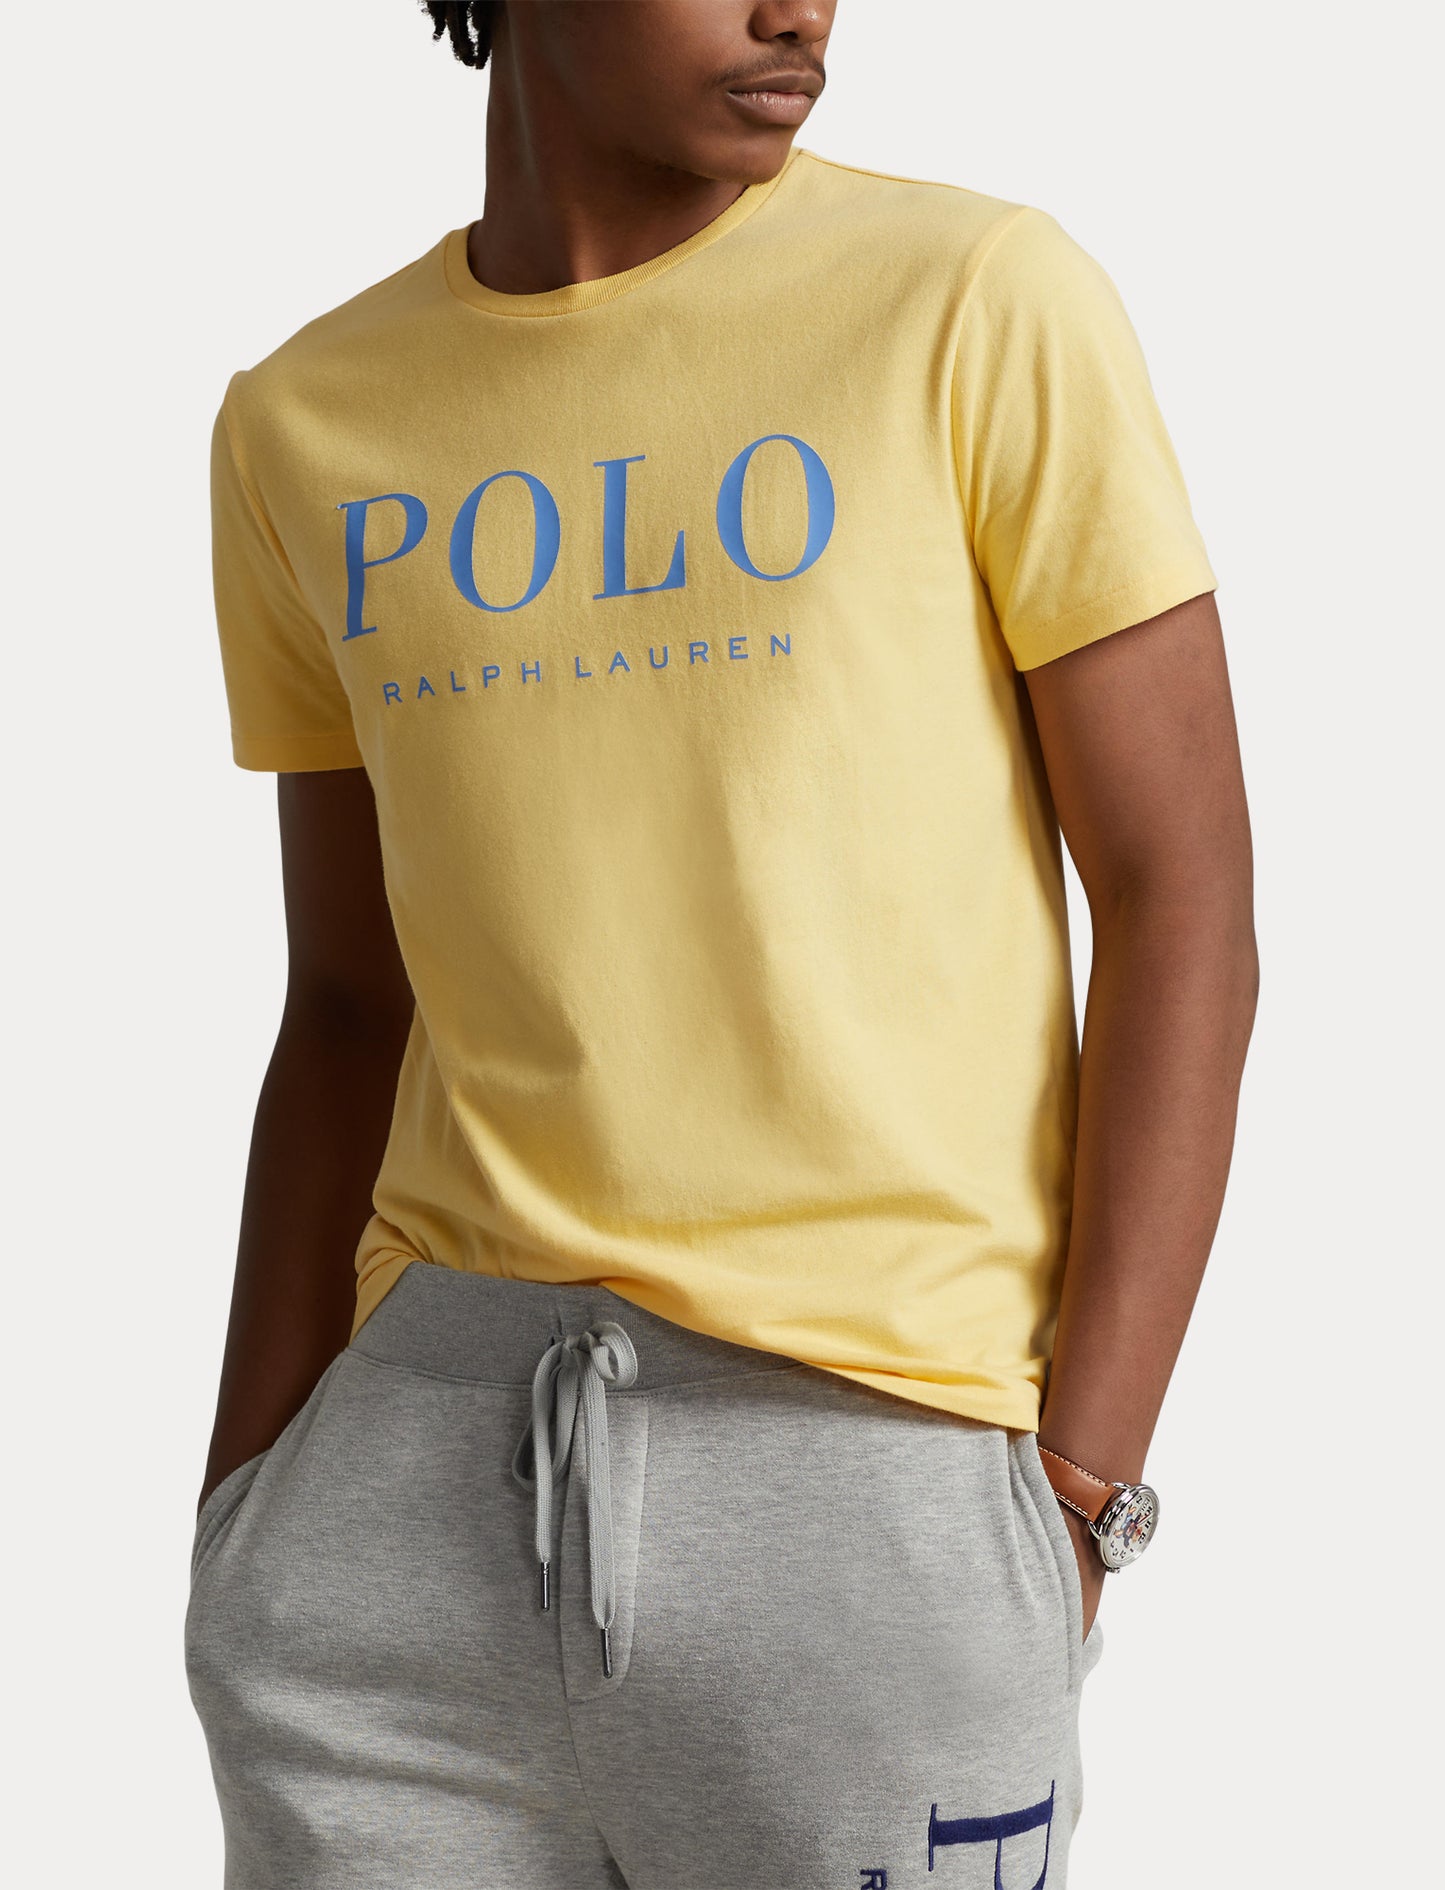 Polo Ralph Lauren Jersey T-Shirt Banana Cream